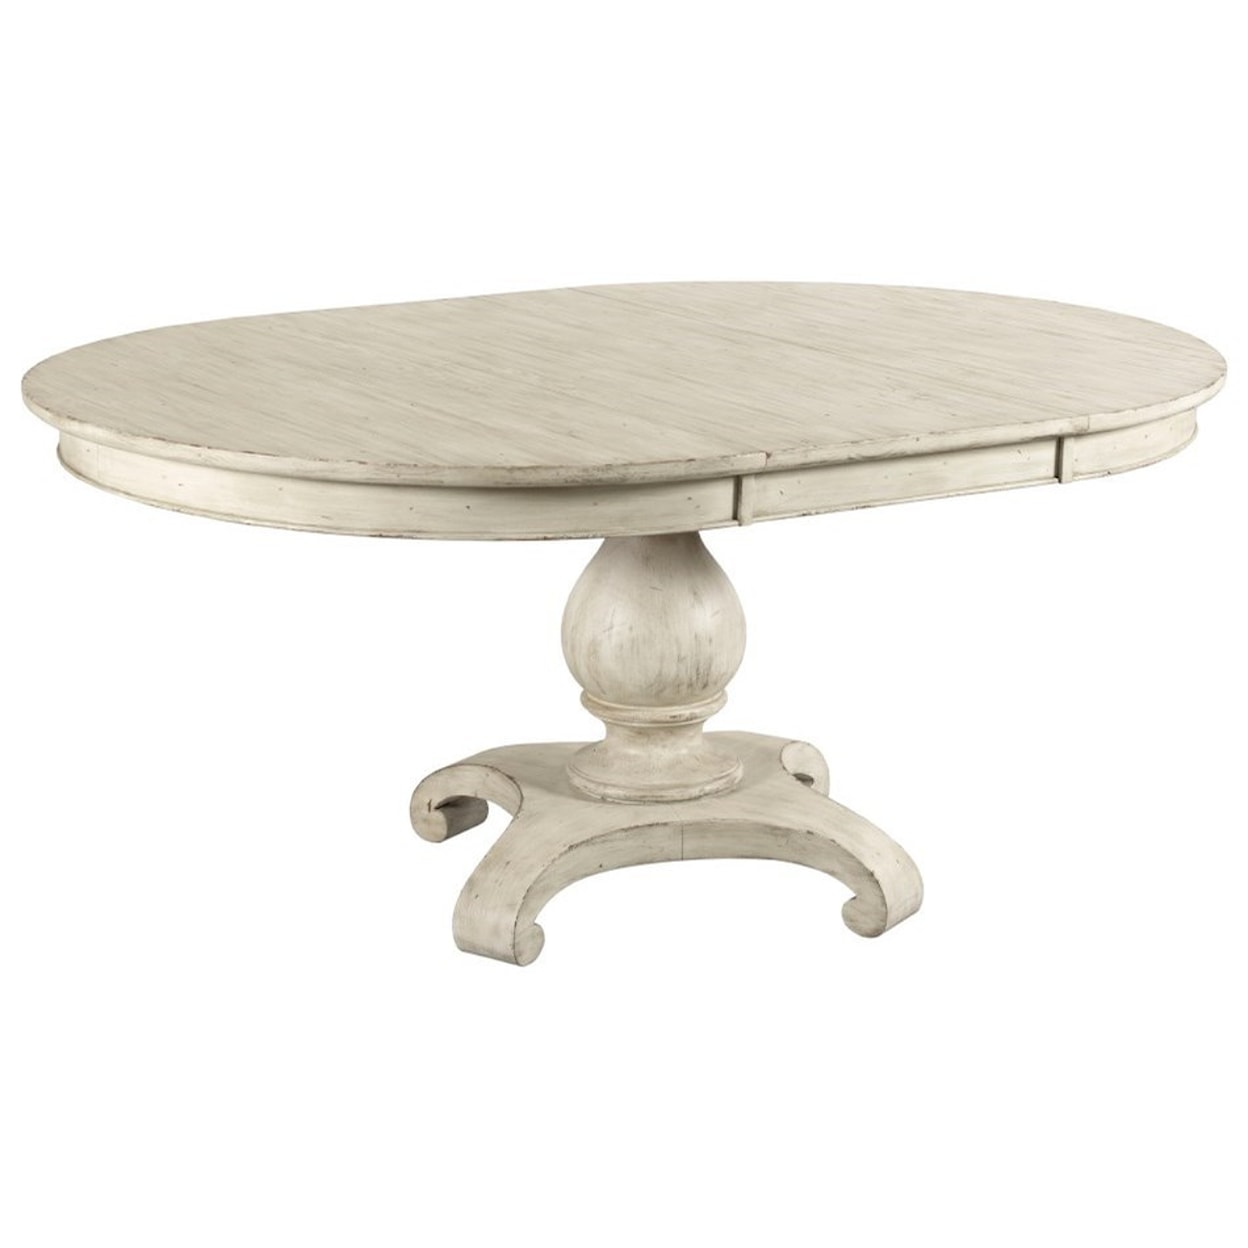 Kincaid Furniture Selwyn Lloyd Pedestal Dining Table